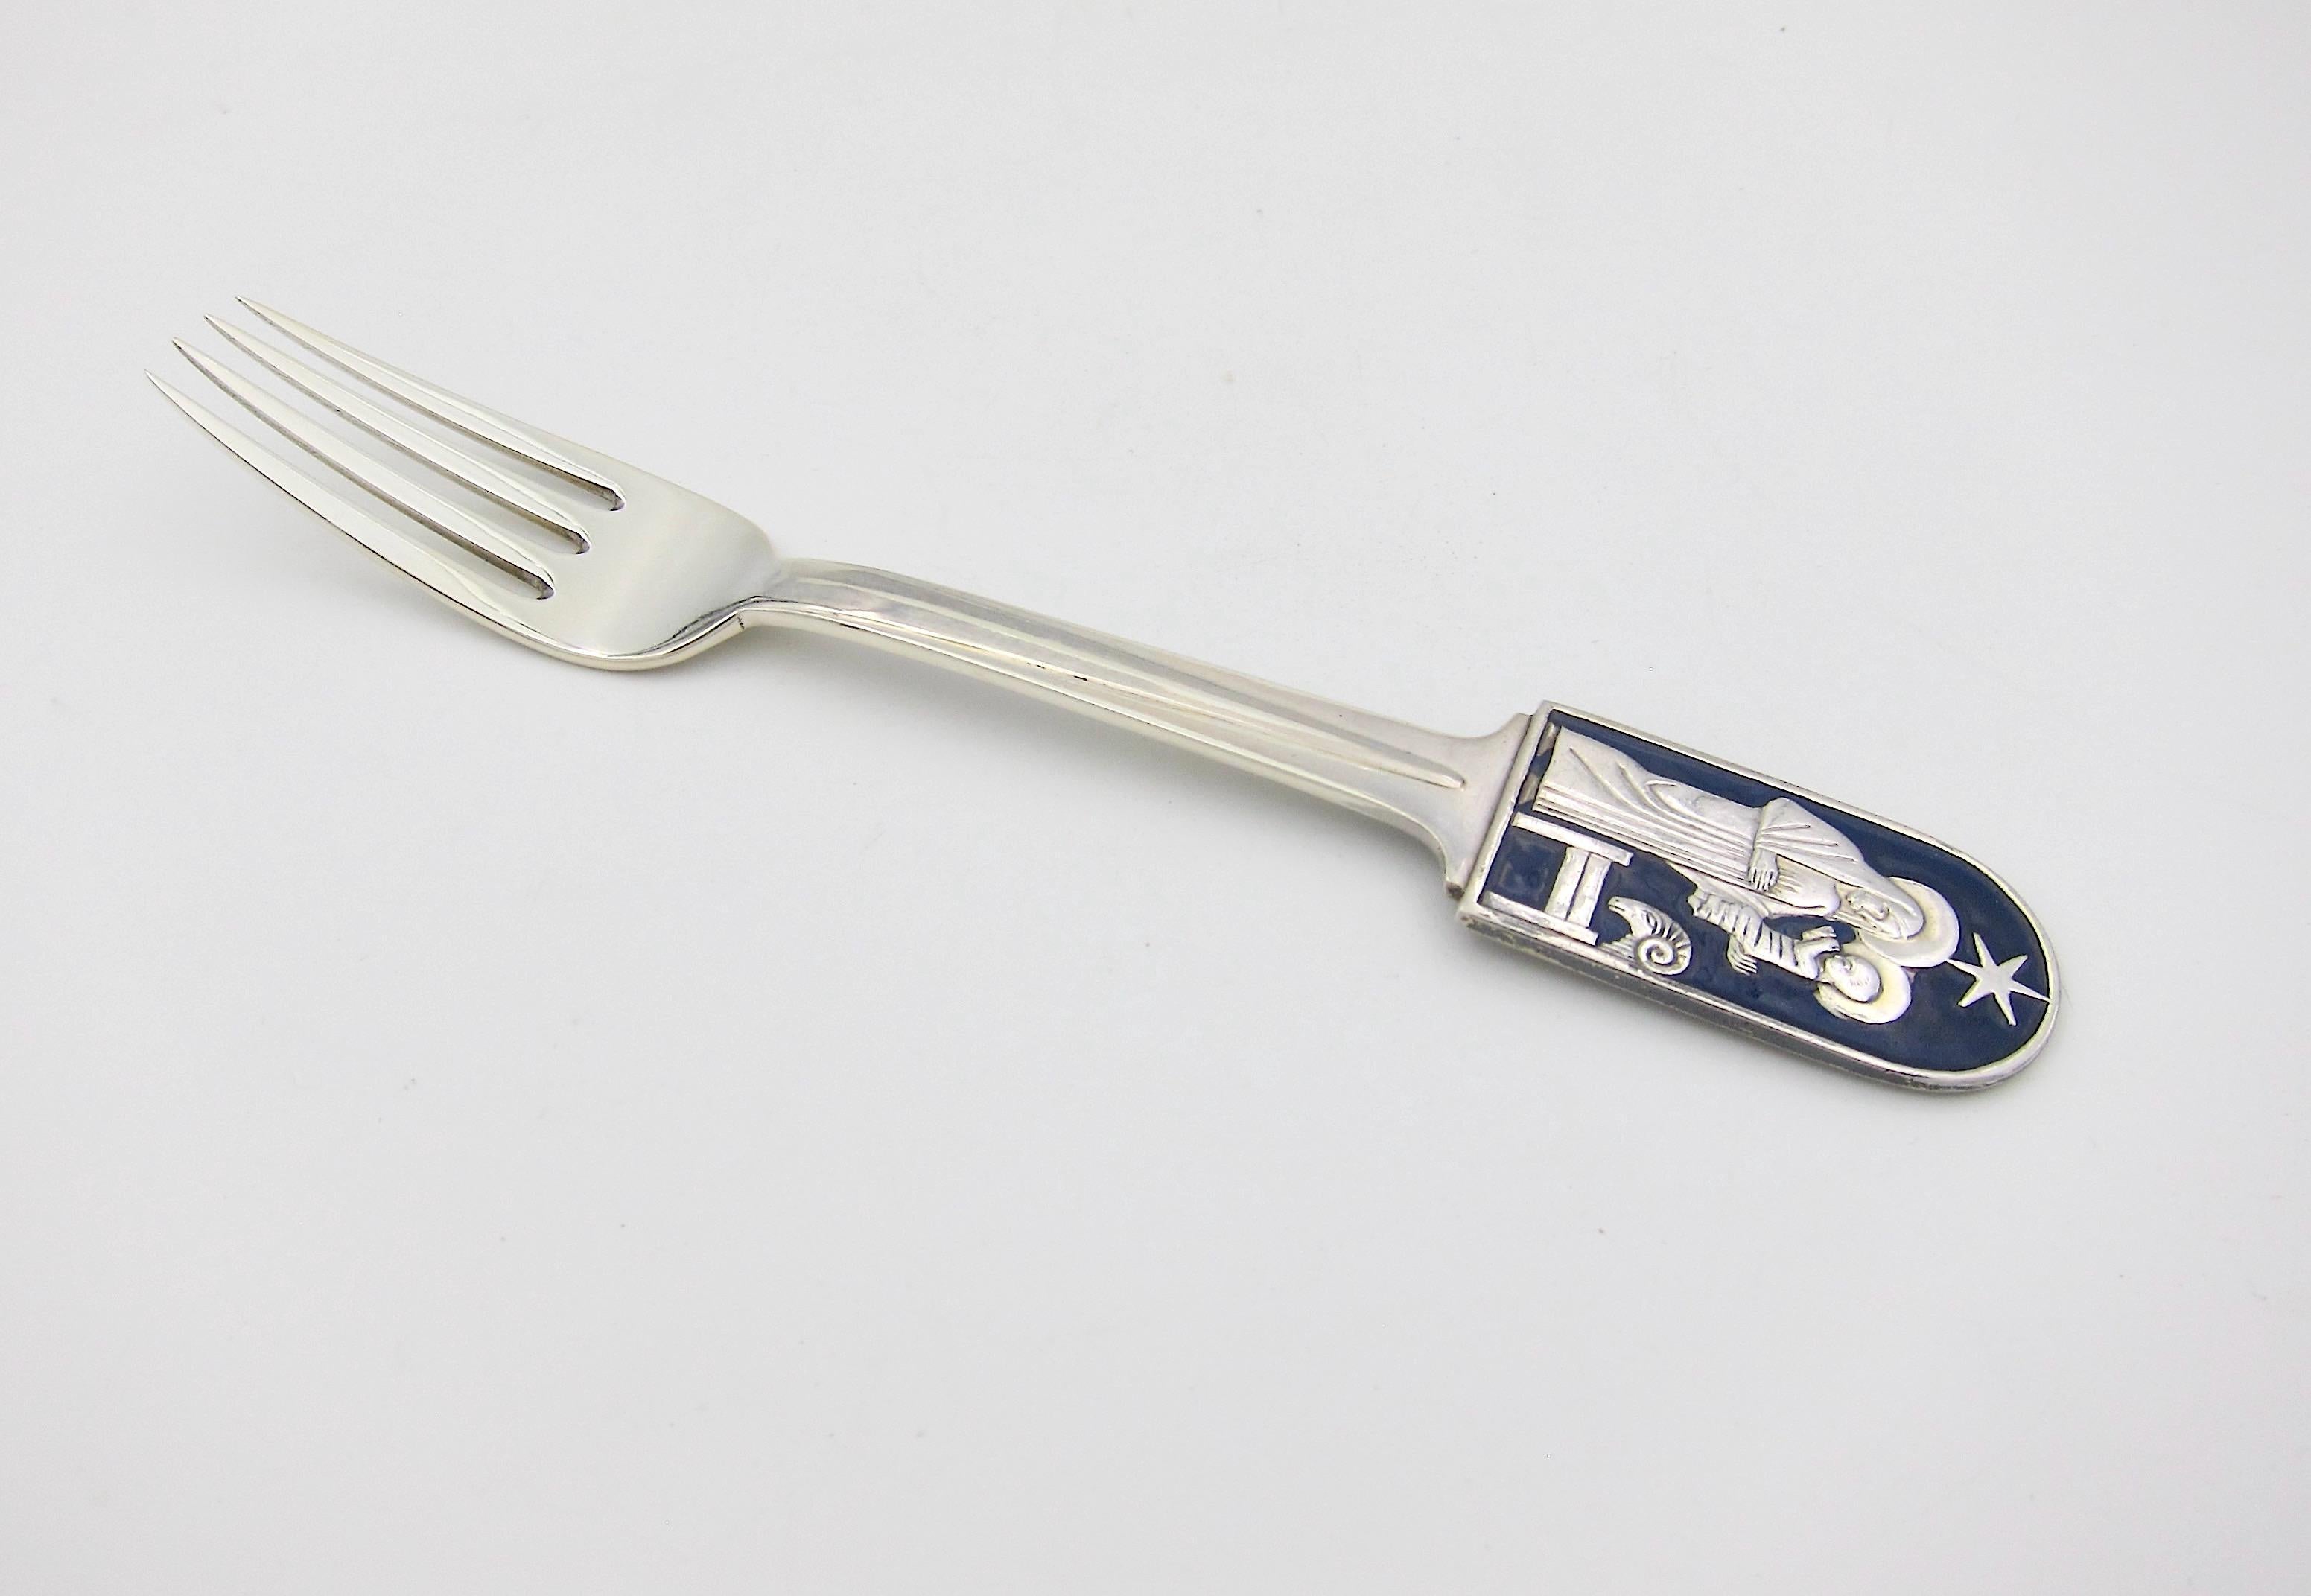 A Danish sterling silver and enamel Christmas fork from Anton Michelsen of Copenhagen, Denmark. This 